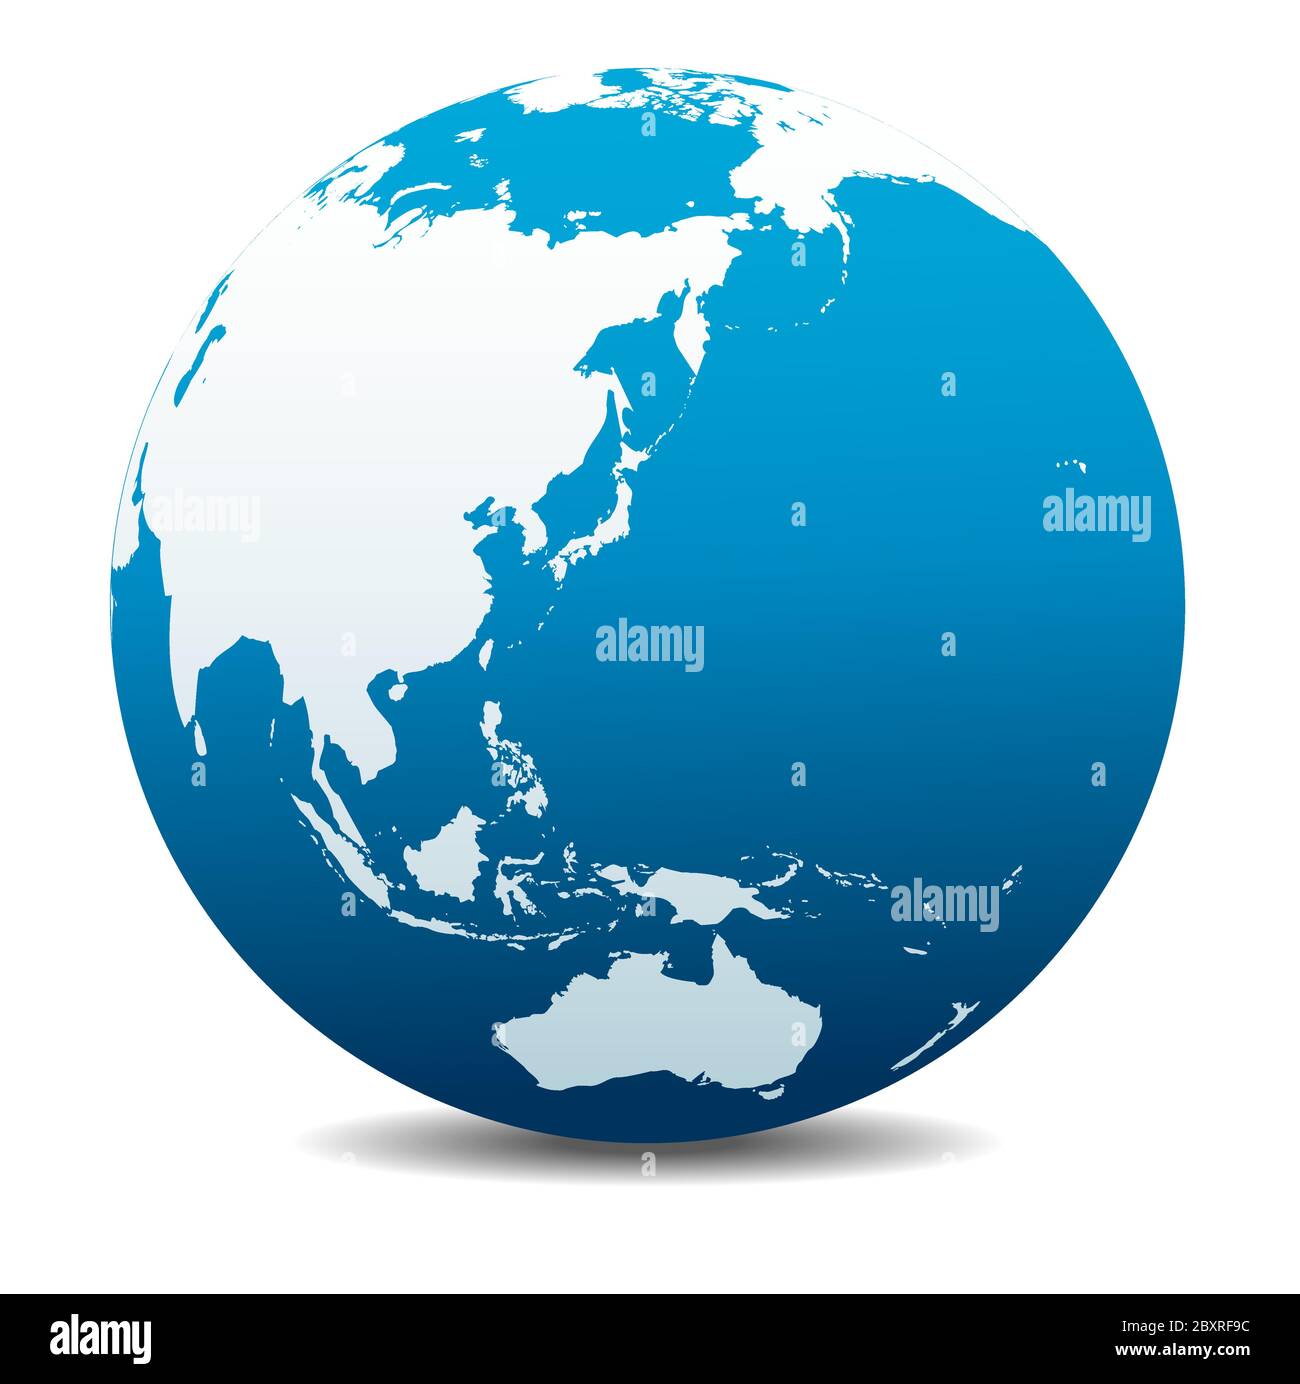 Chine, Japon, Malaisie, Thaïlande, Indonésie, Hawaï, Australie. Icône carte vectorielle du globe terrestre, Terre. Les éléments se trouvent sur des calques individuels. Illustration de Vecteur